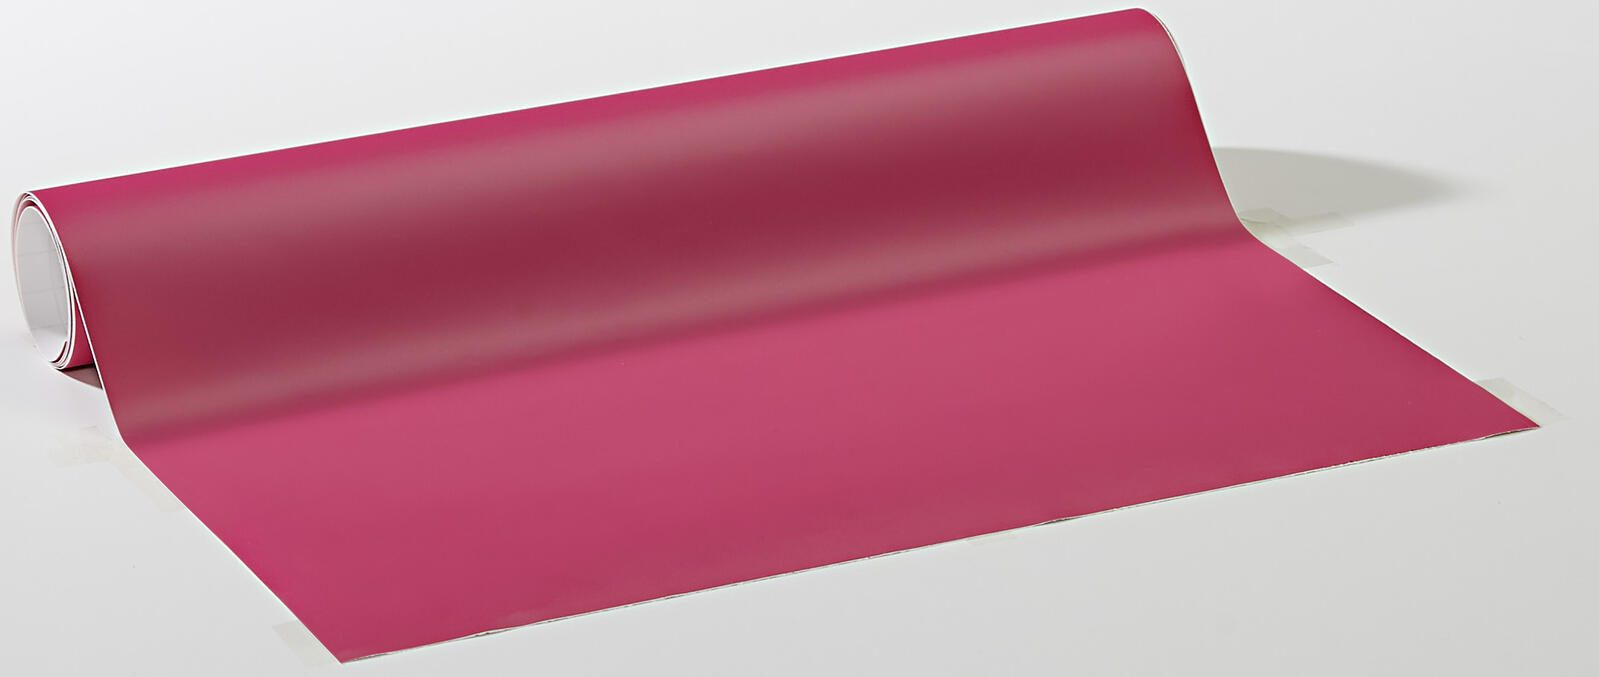 plottiX Wandtattoo-Folie plottix Wandtatto pink 31.5 cm x 1 m pink